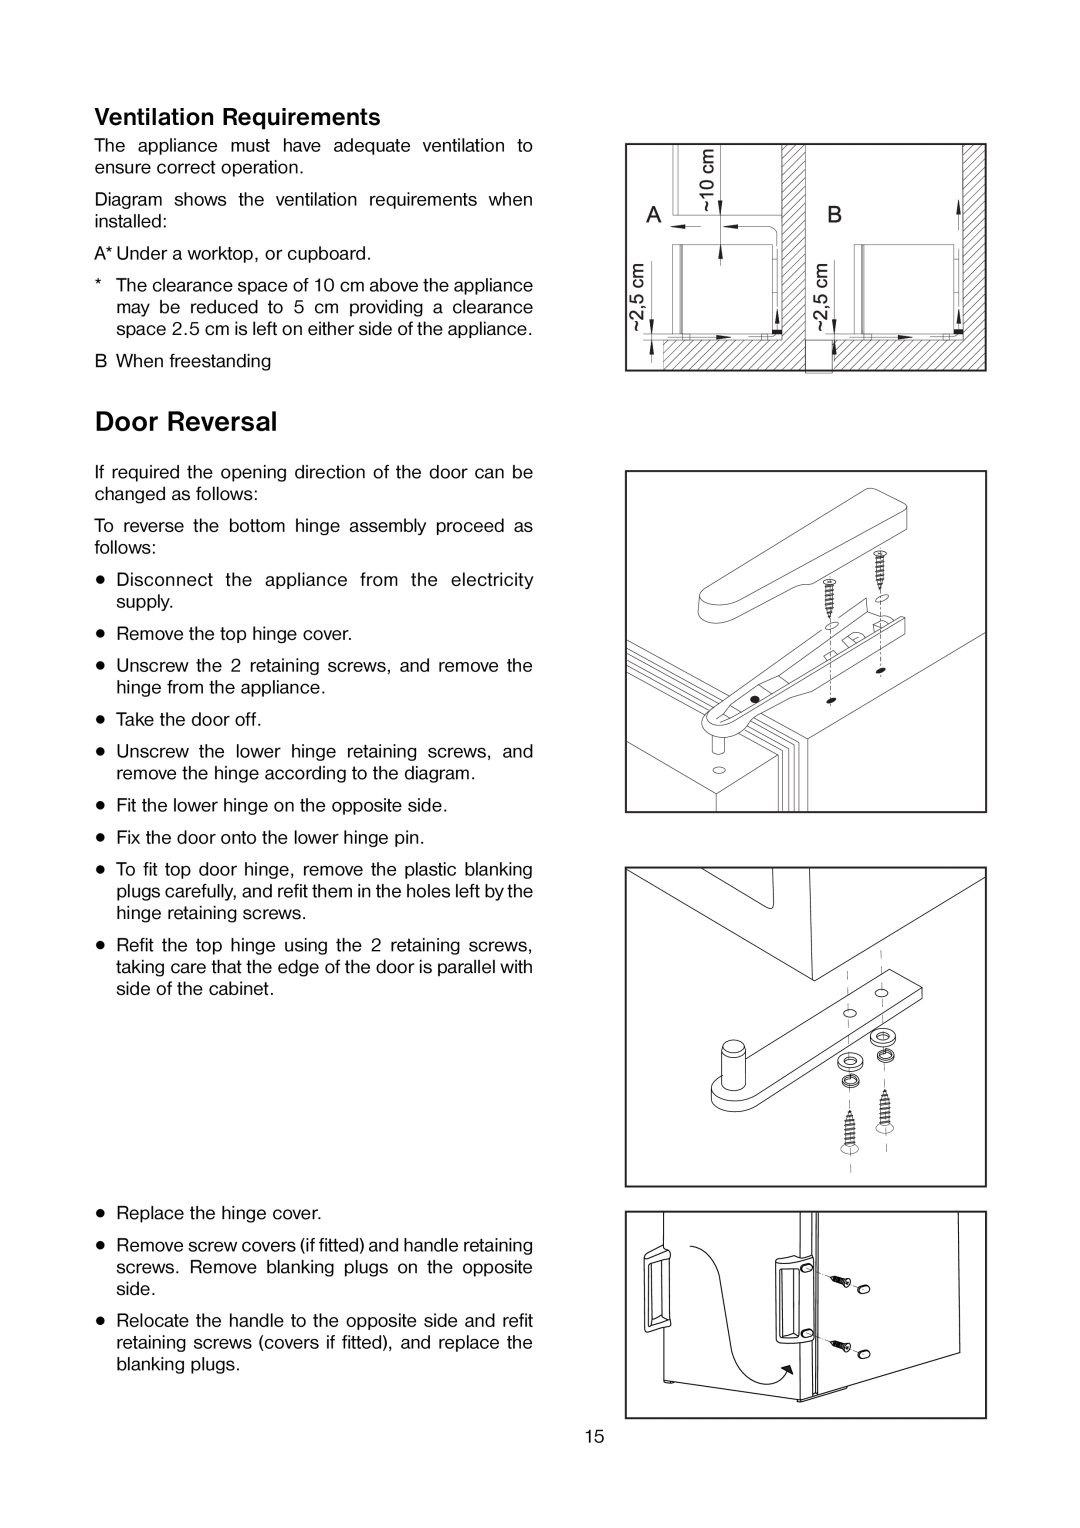 Zanussi ZV 17 manual Door Reversal, Ventilation Requirements 